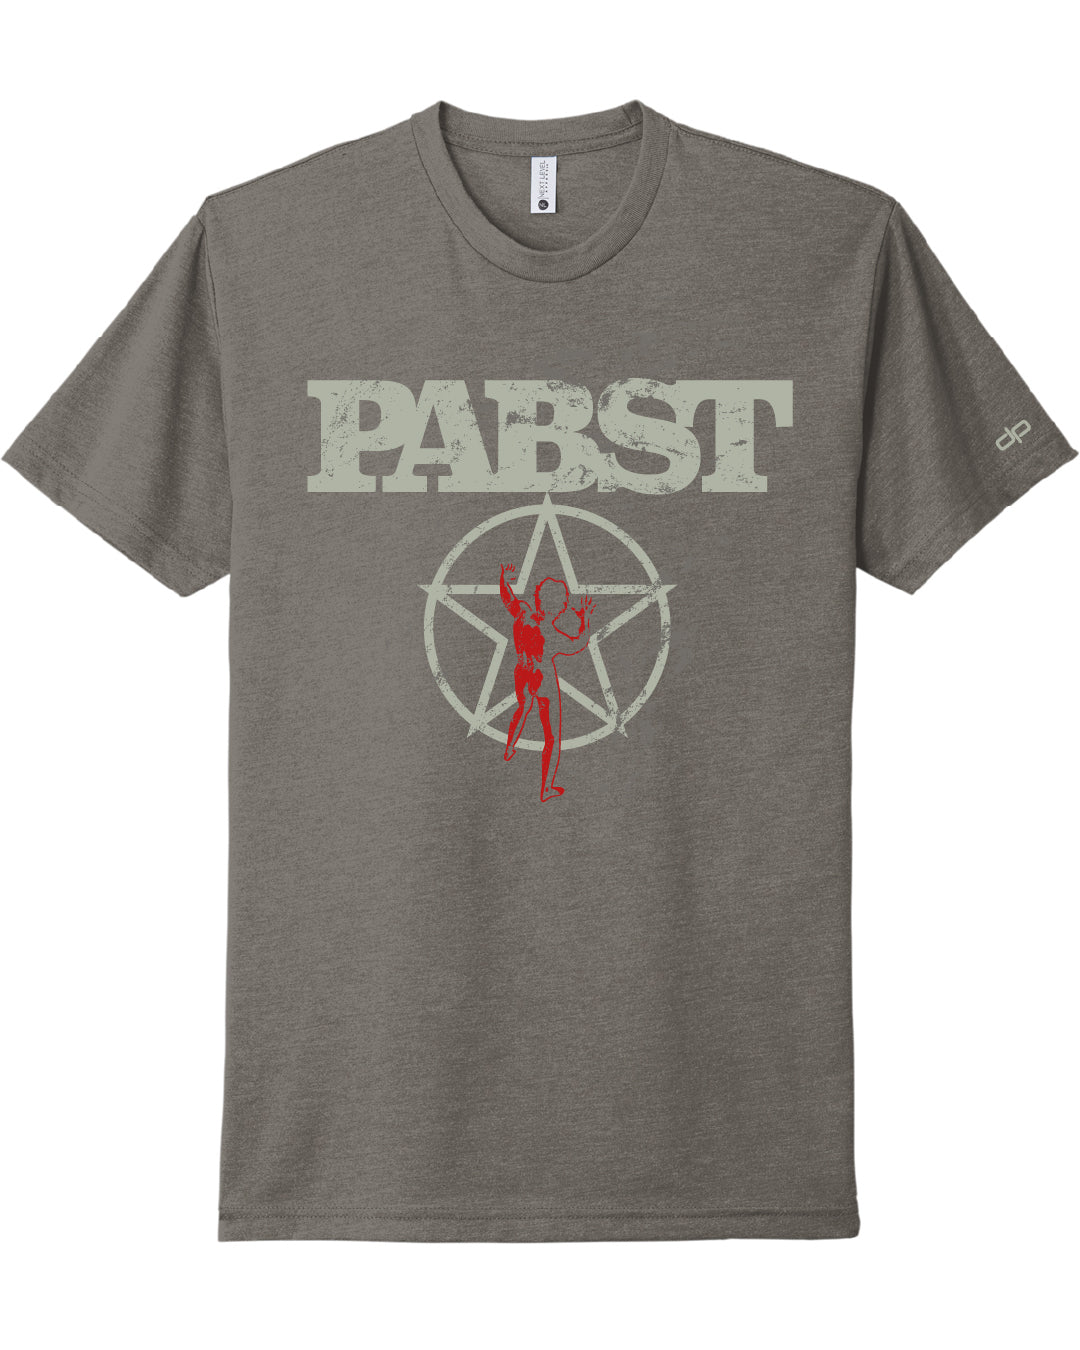 Pabst Concert T-Shirt